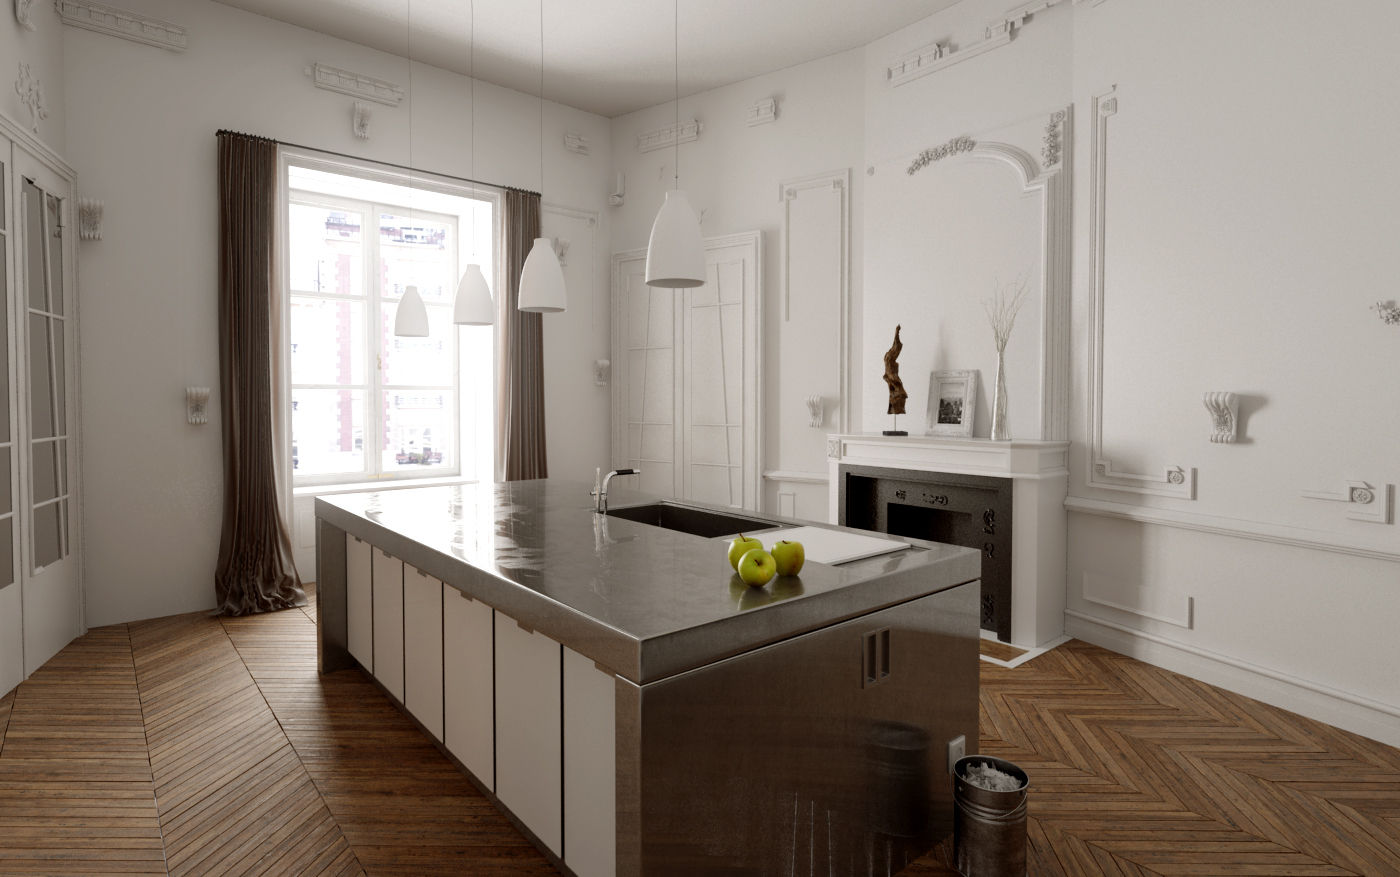 110 m² découpe Haussmann, Better and better Better and better Dapur Modern